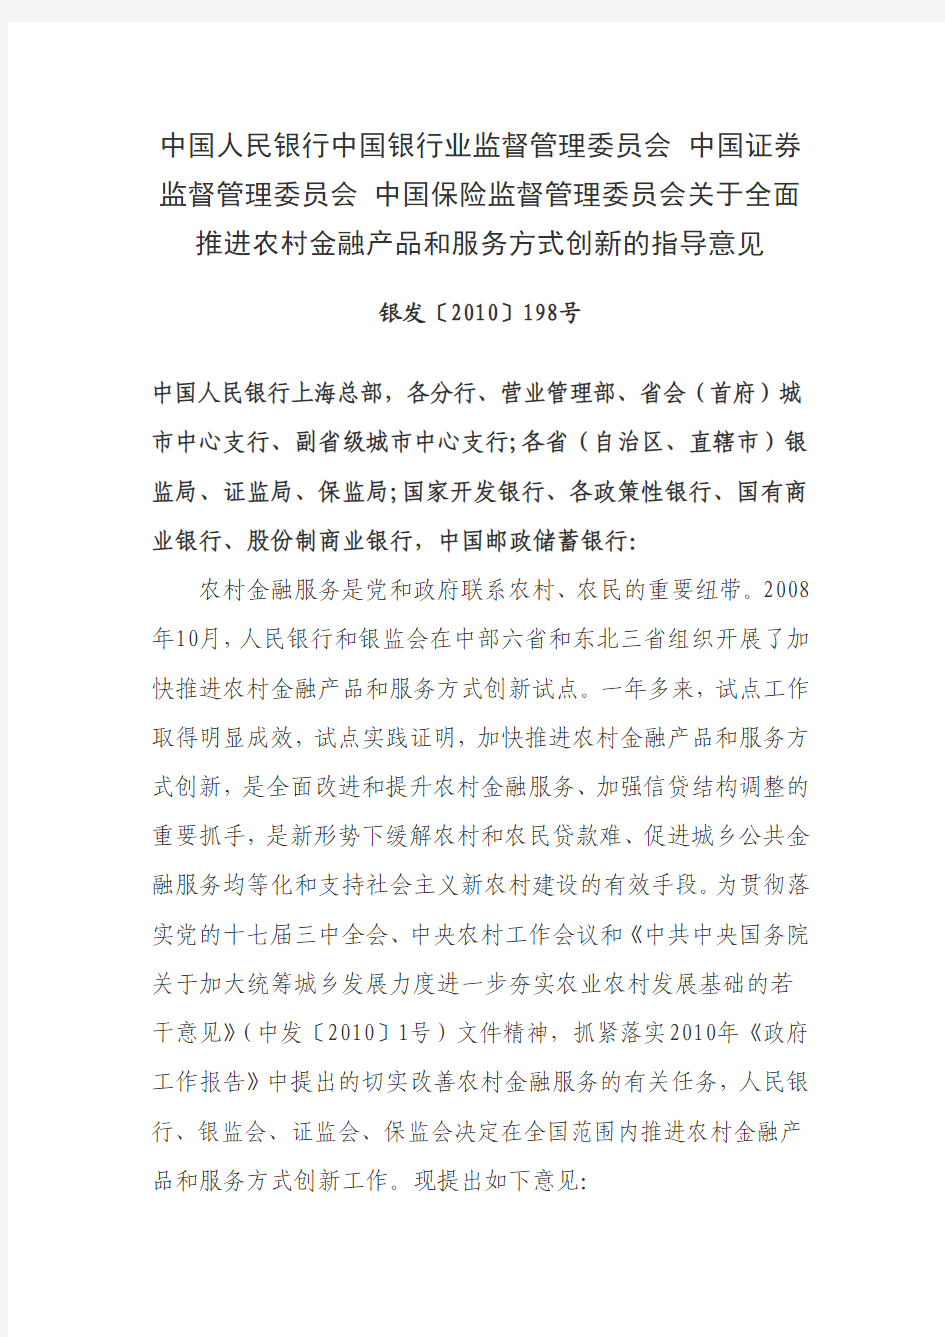 中国人民银行中国银监会 中国证监会 中国保监会关于全面推进农村金融产品和服务方式创新的指导意见